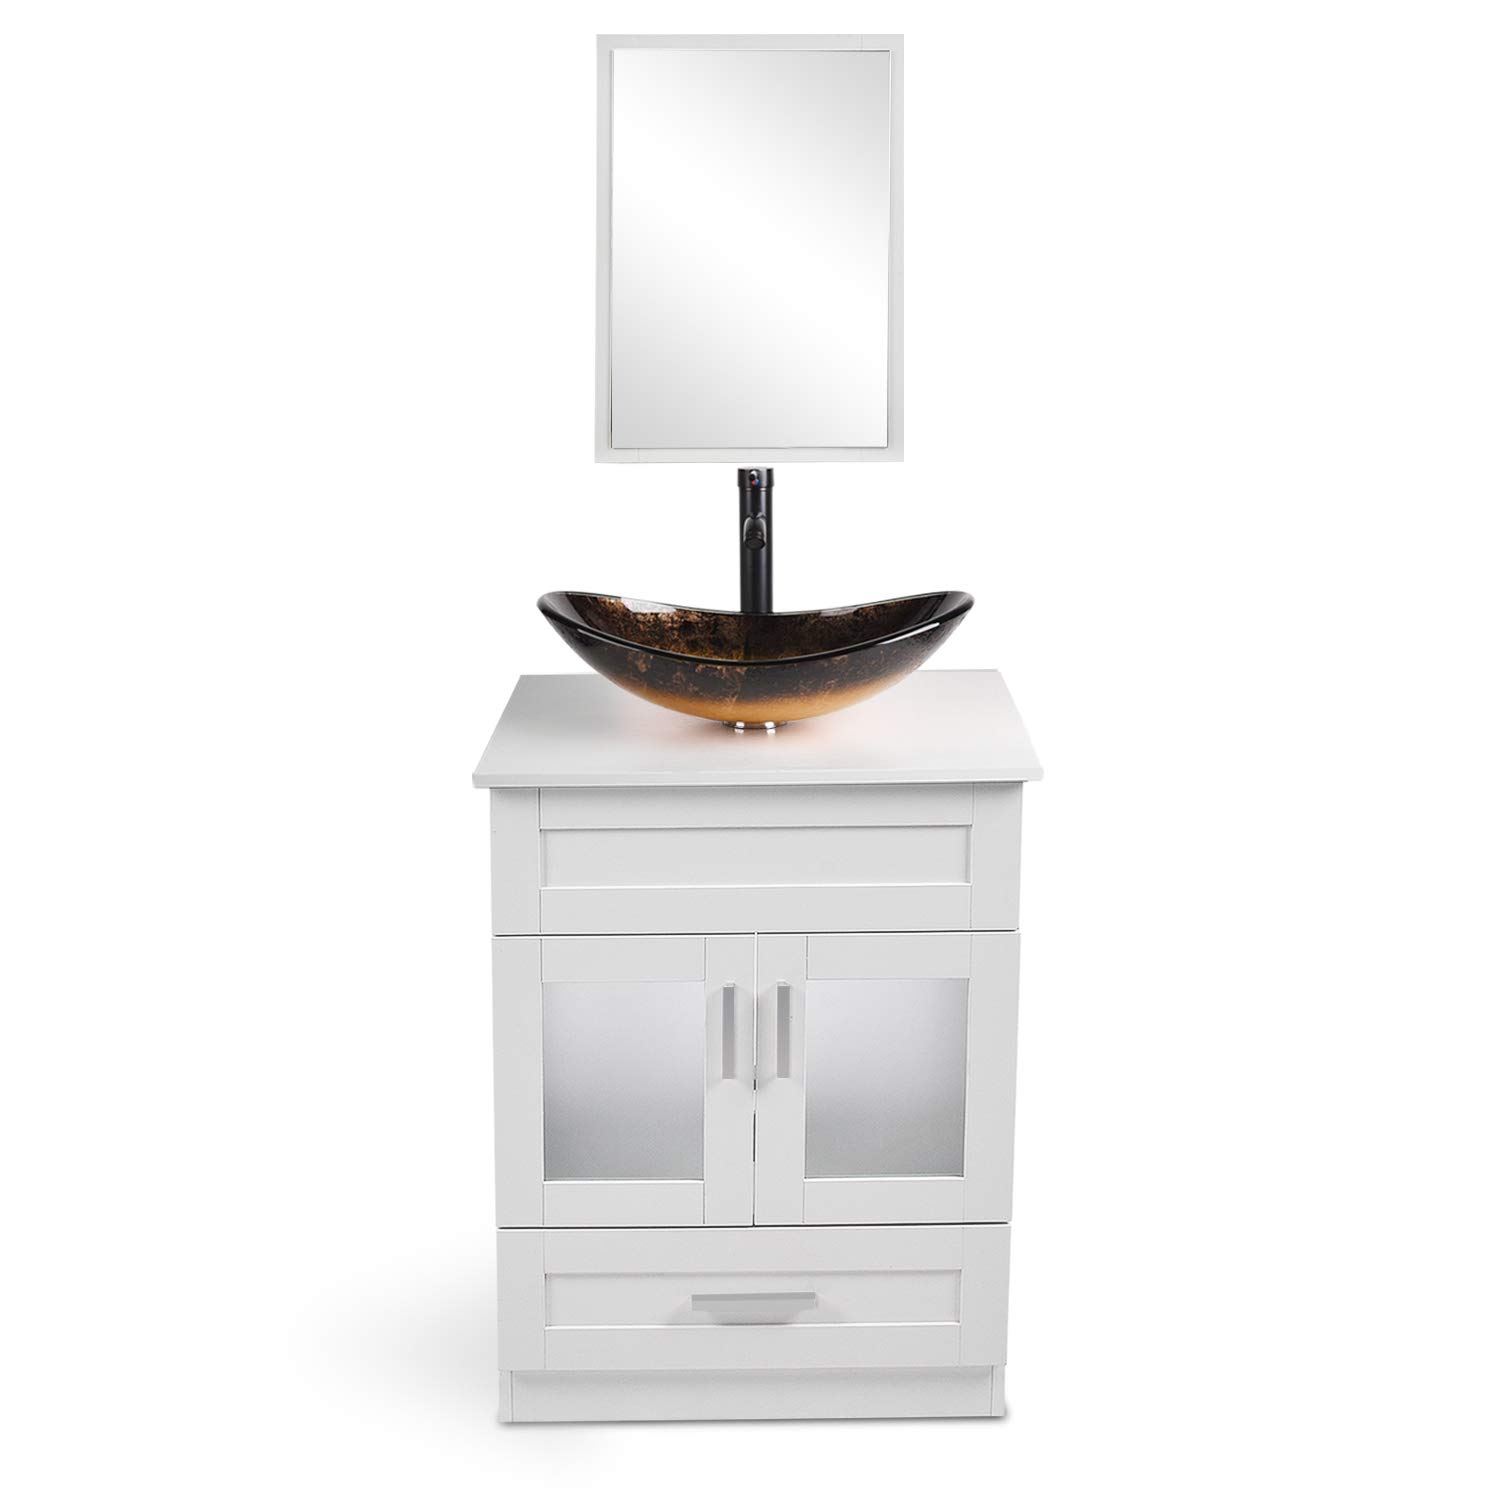 Buy 24 Inch Bathroom Vanity Set With Sink Pvc Board Cabinet Vanity